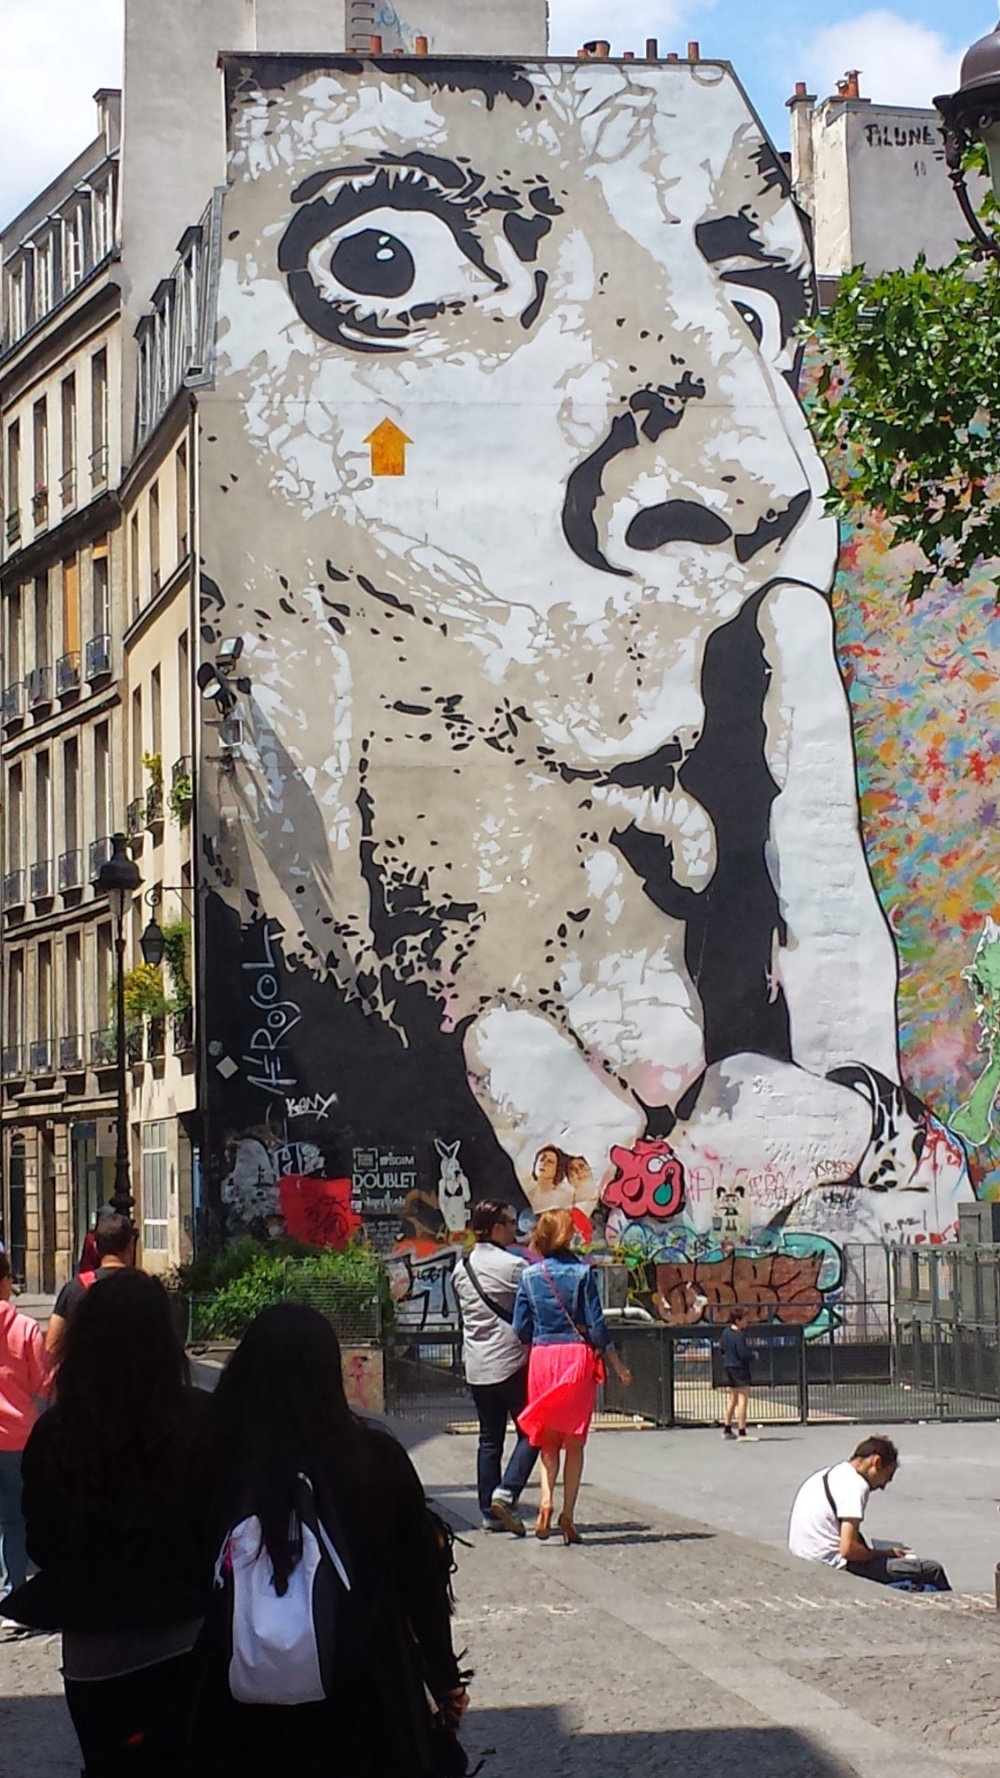 mural in Paris by artist Jef Aerosol.